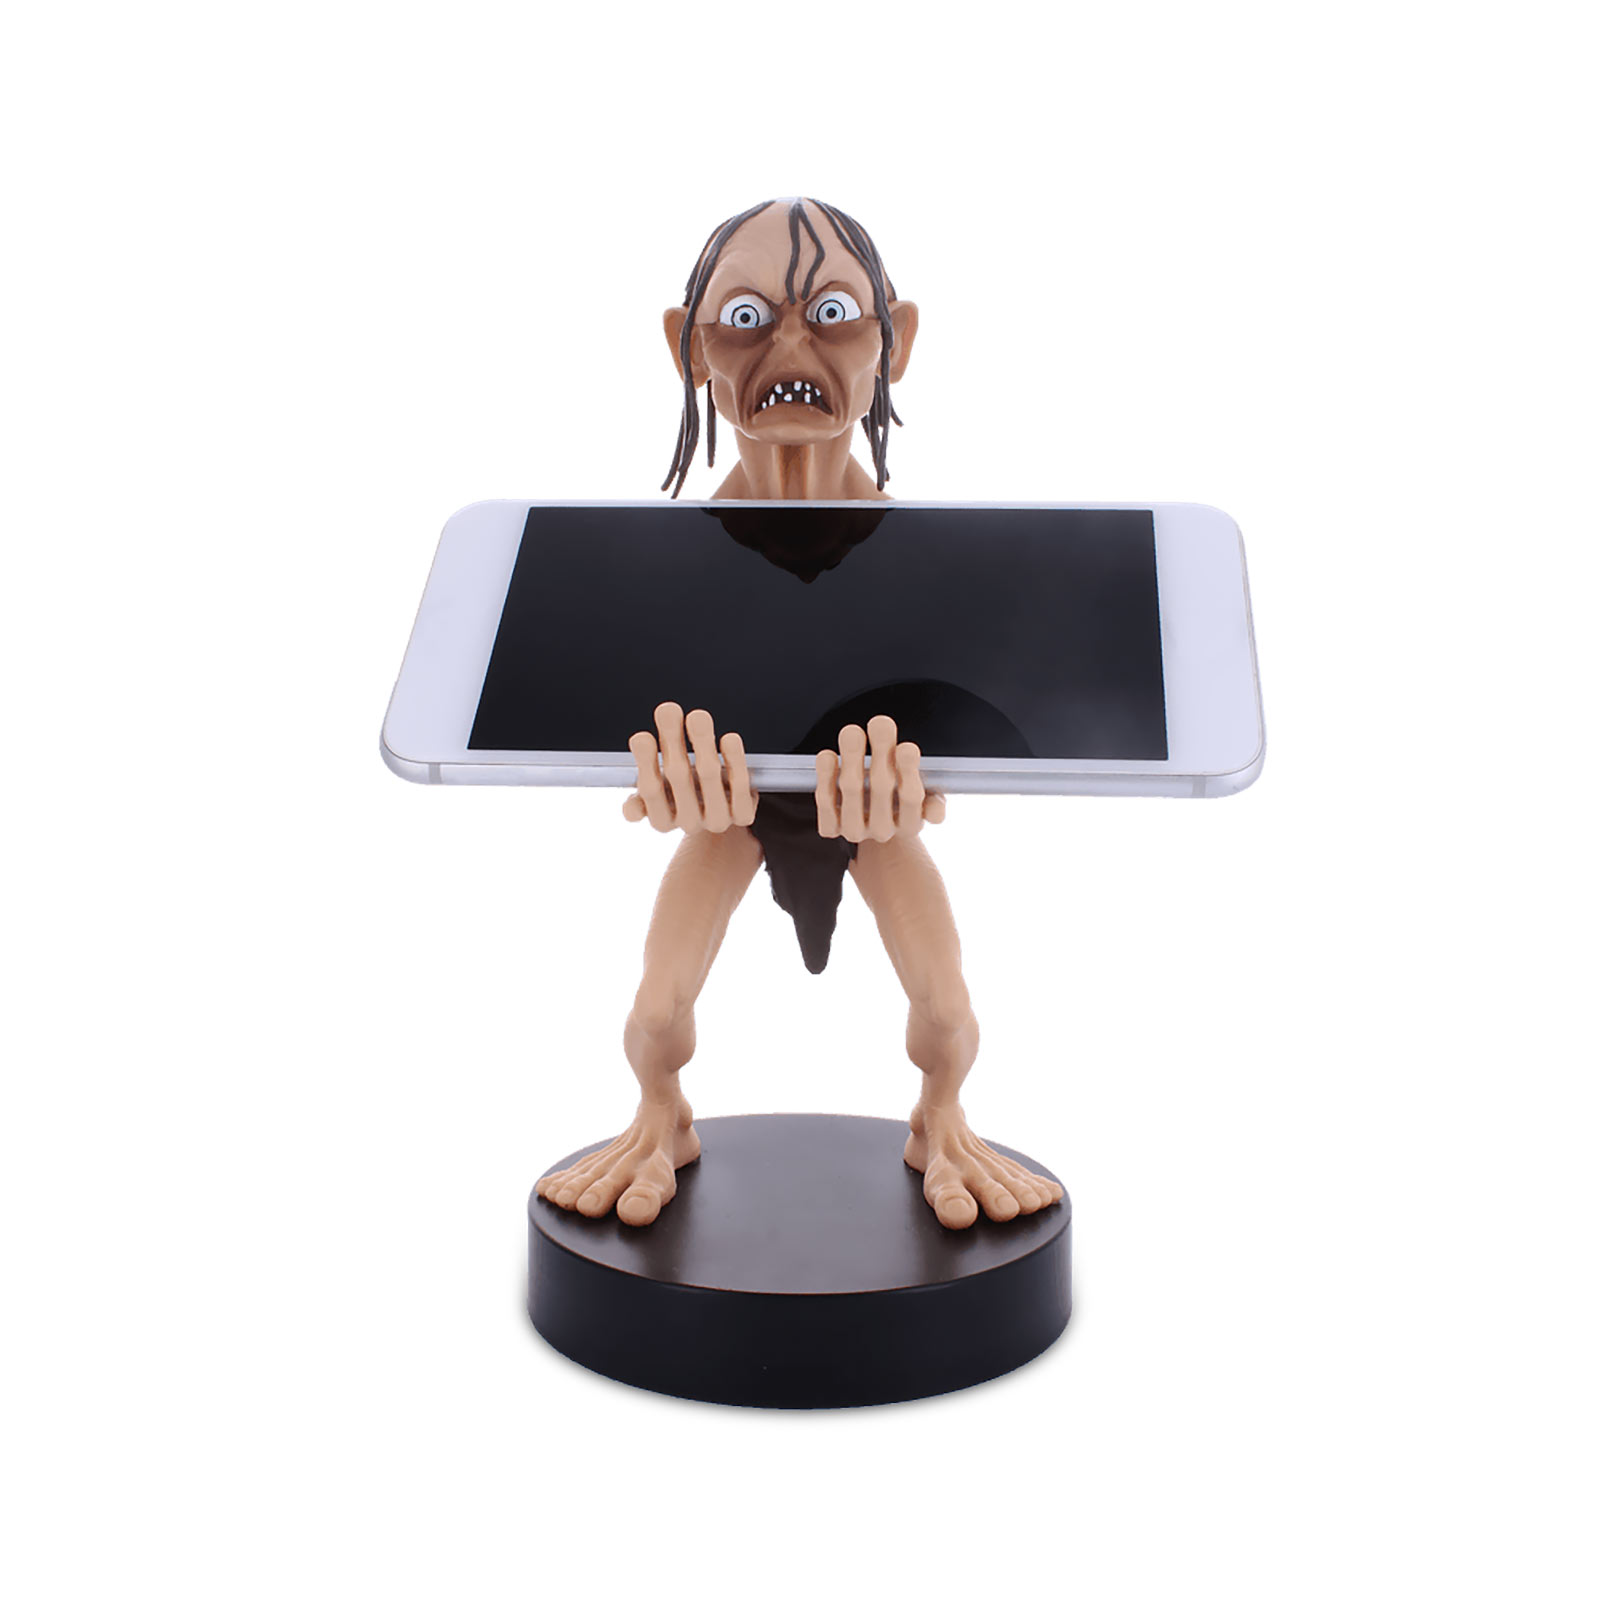 Herr der Ringe - Gollum Cable Guy Figur